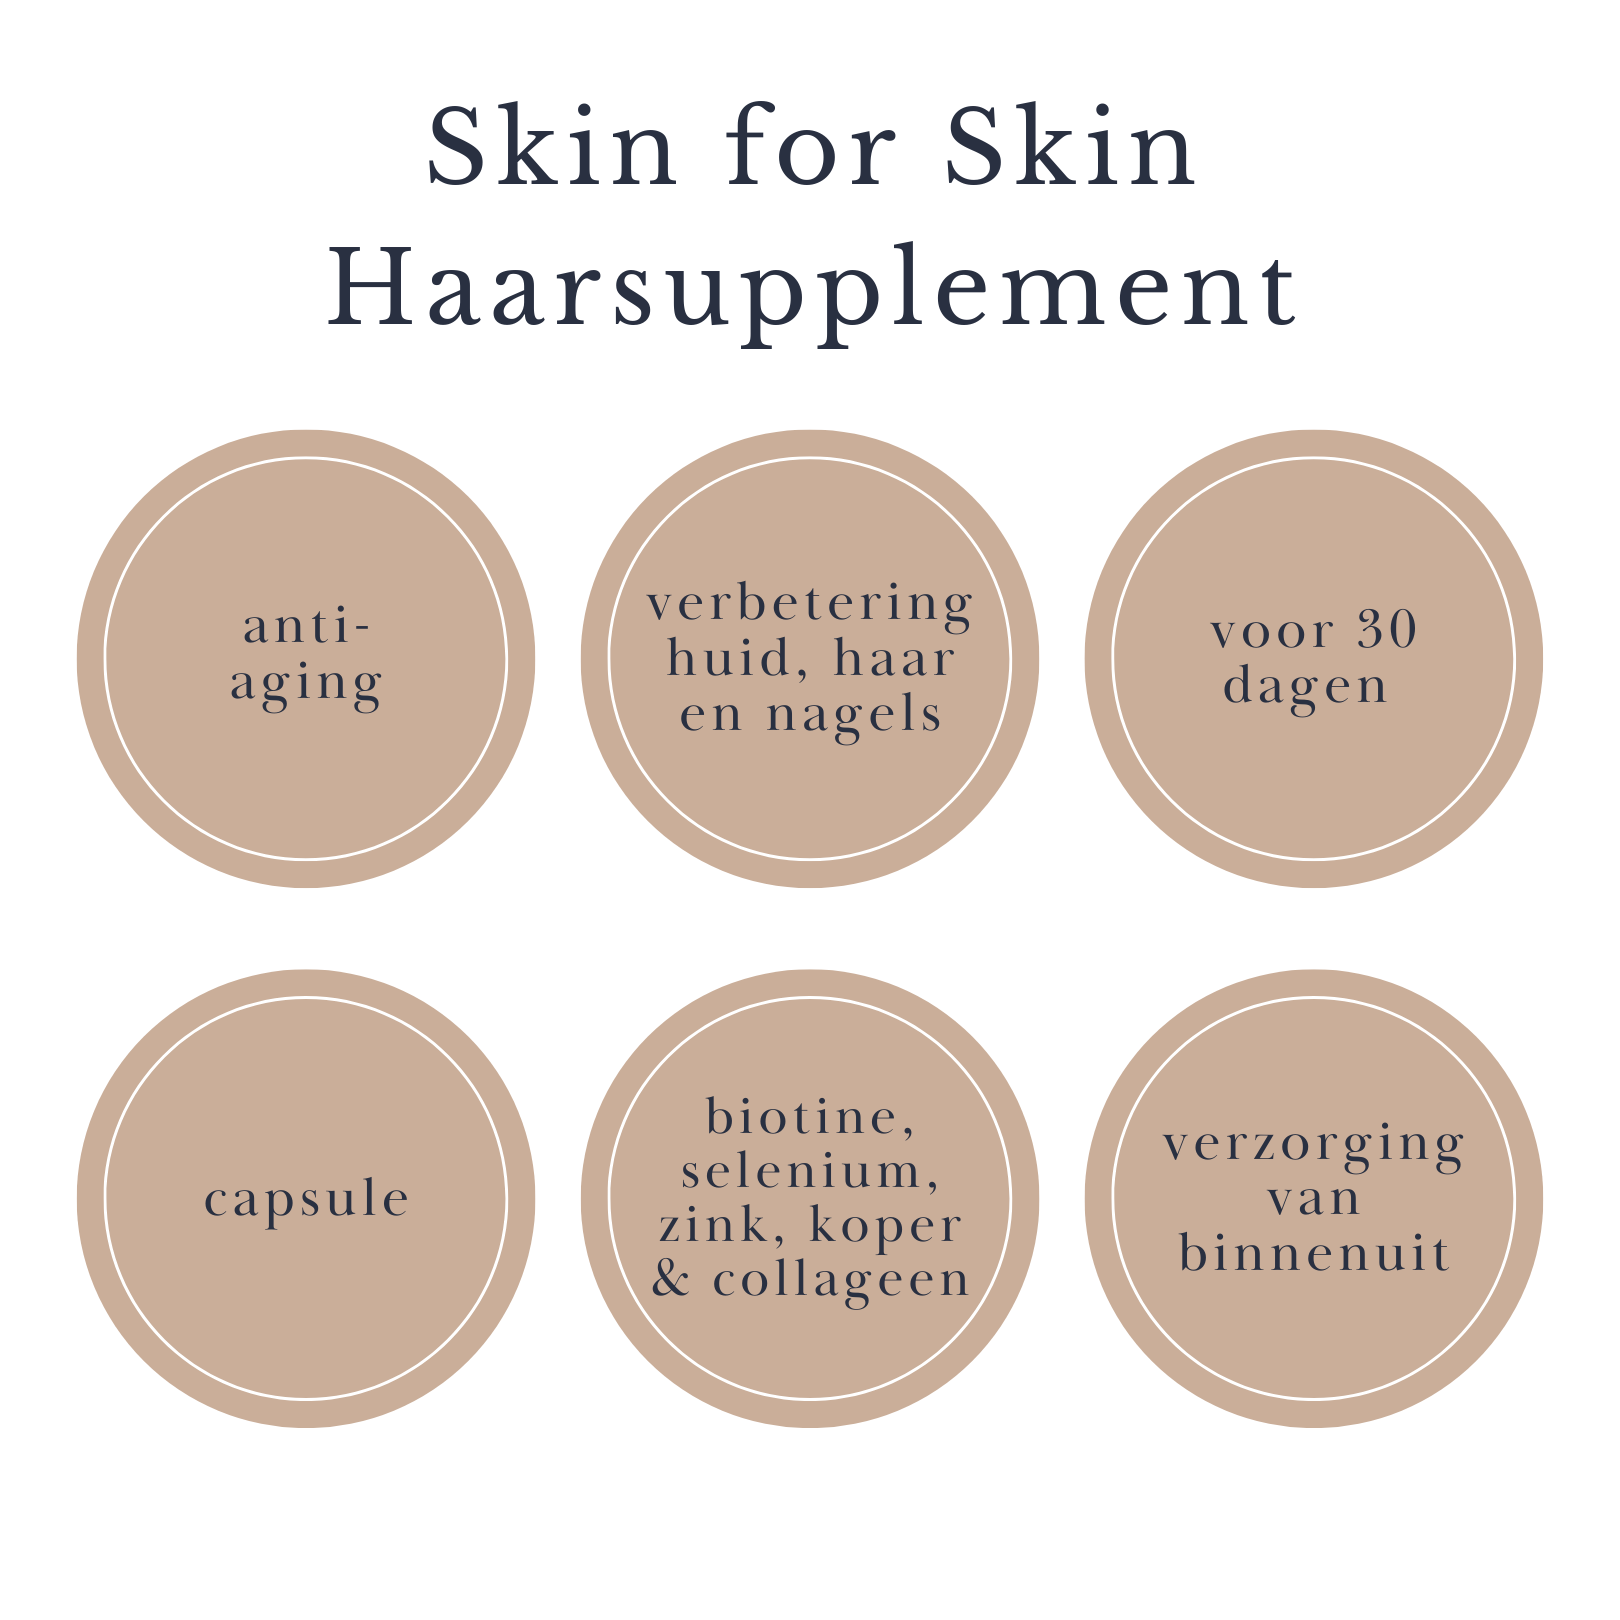 skin for skin haarsupplement